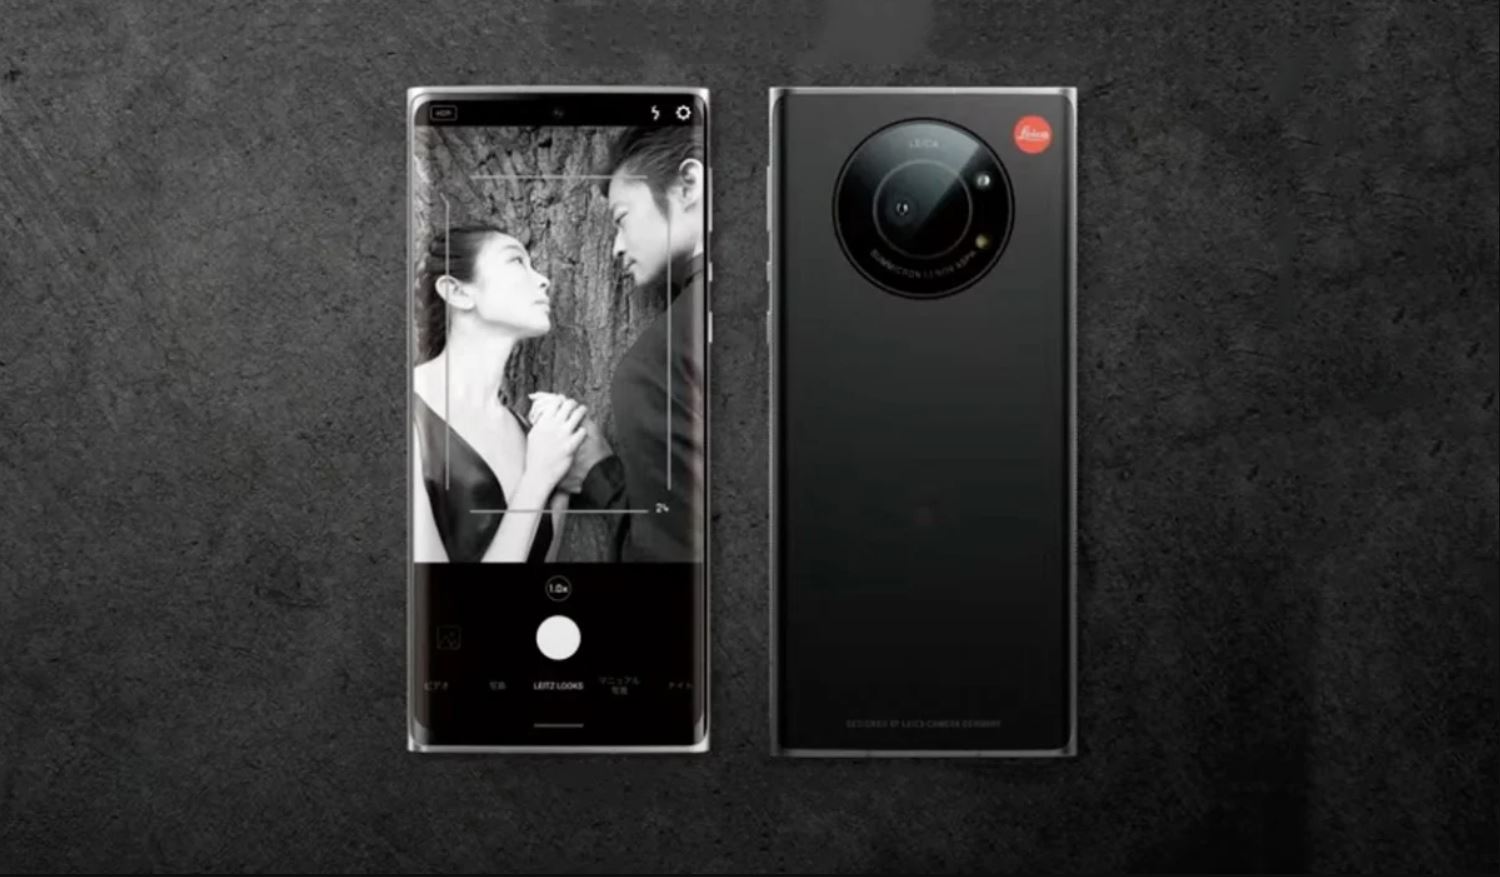 Leica Rilis Ponsel Pertama di Jepang, Harganya Tembus Rp24 Jutaan